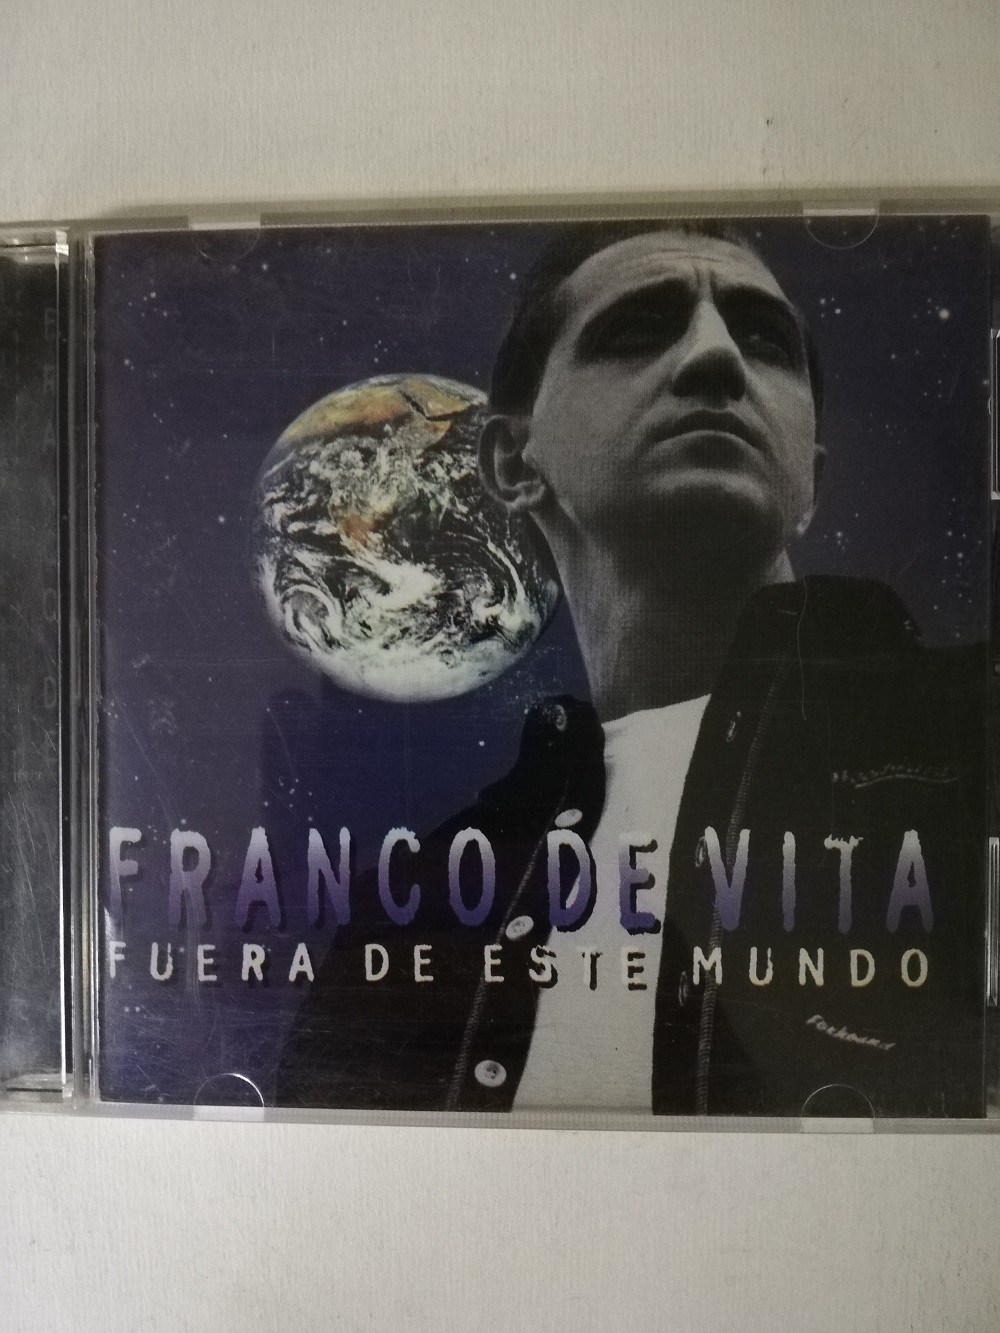 Imagen CD FRANCO DE VITA - FUERA DE ESTE MUNDO  1